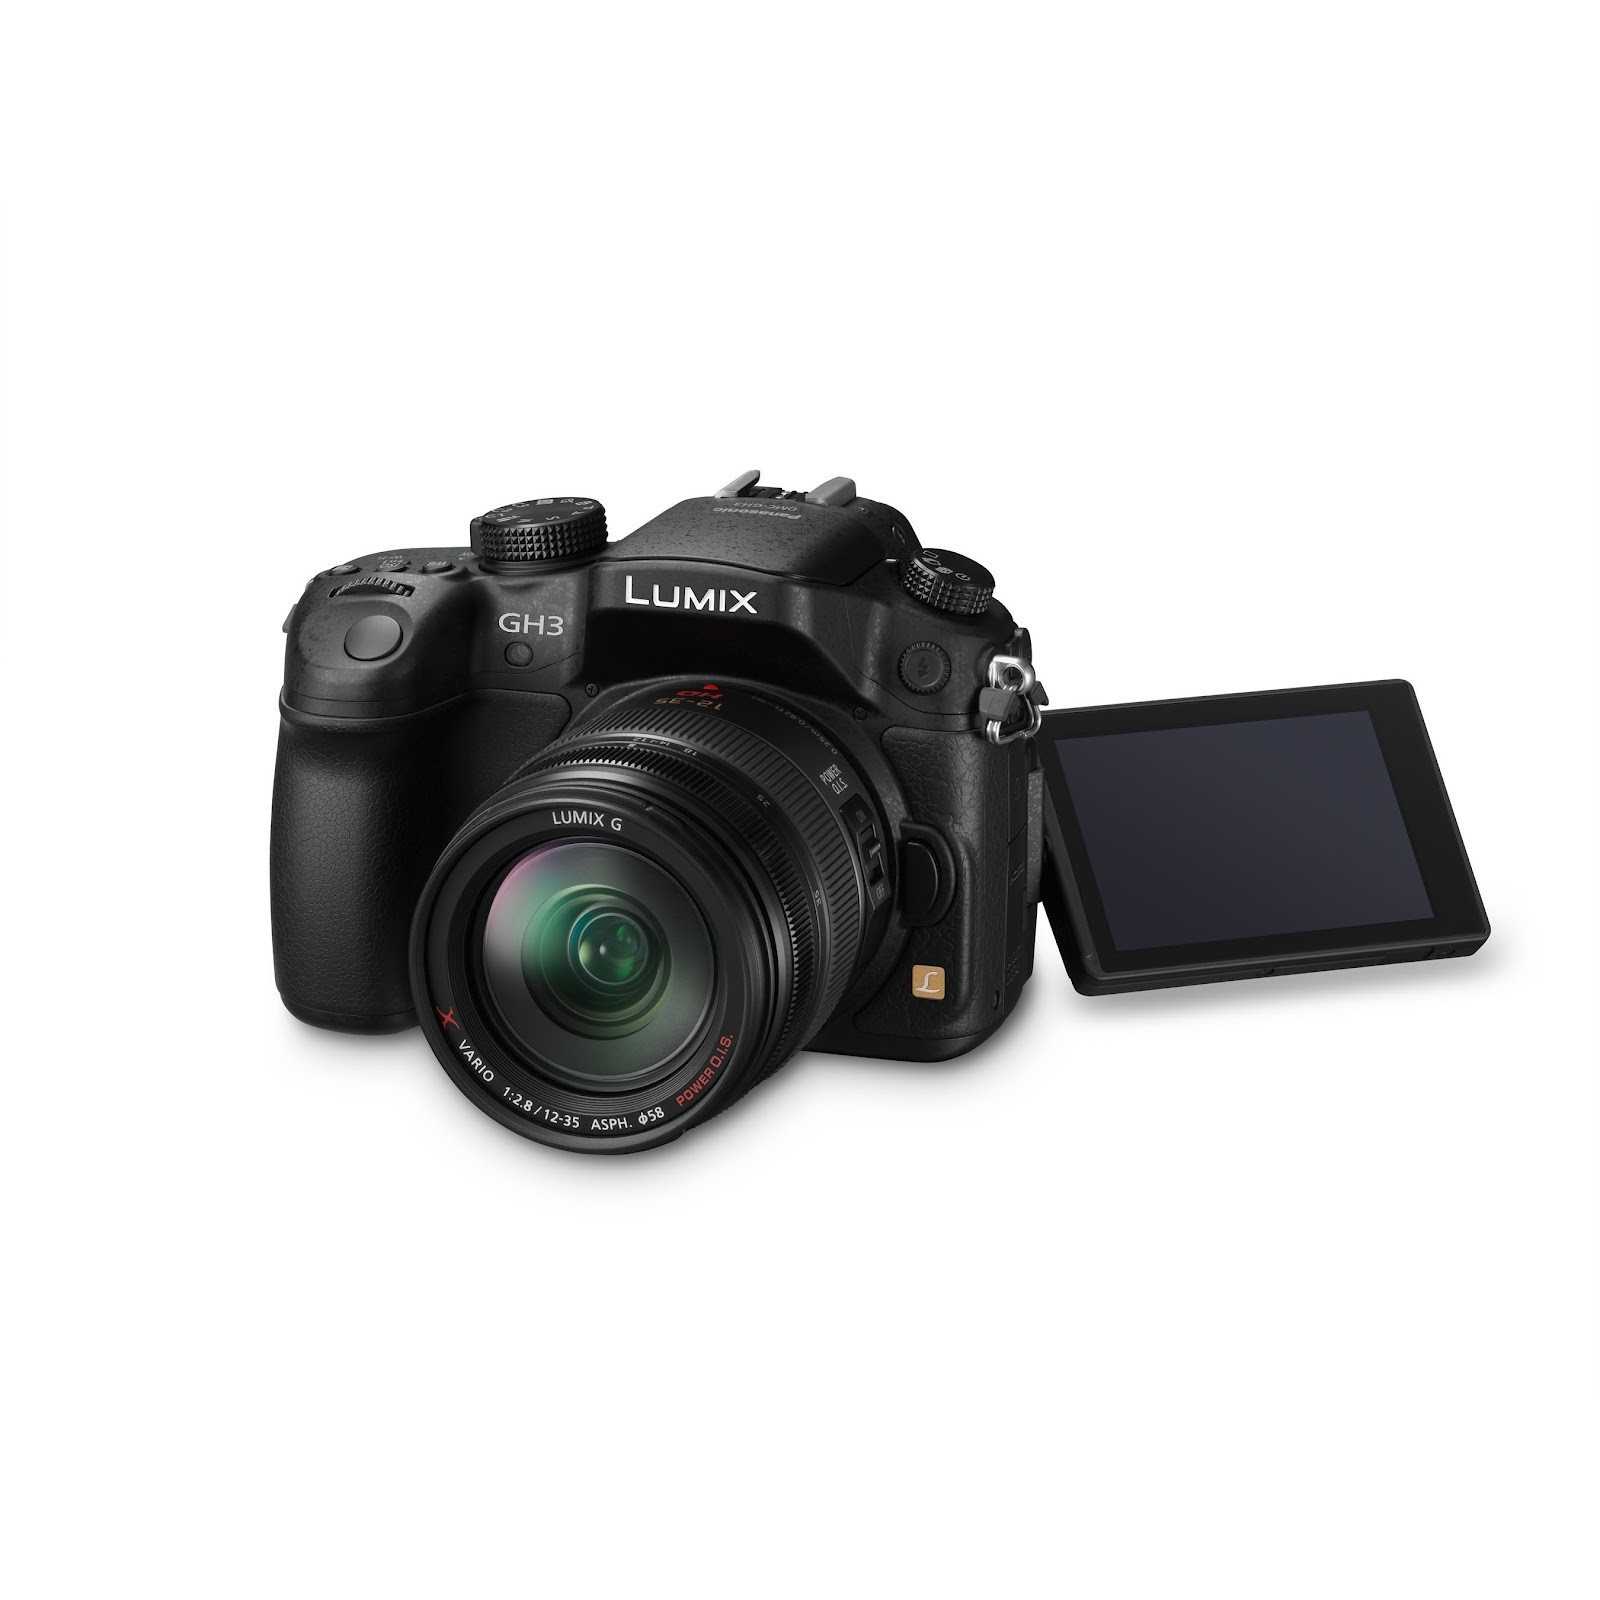 Panasonic lumix dmc-gh3 kit - купить , скидки, цена, отзывы, обзор, характеристики - фотоаппараты цифровые